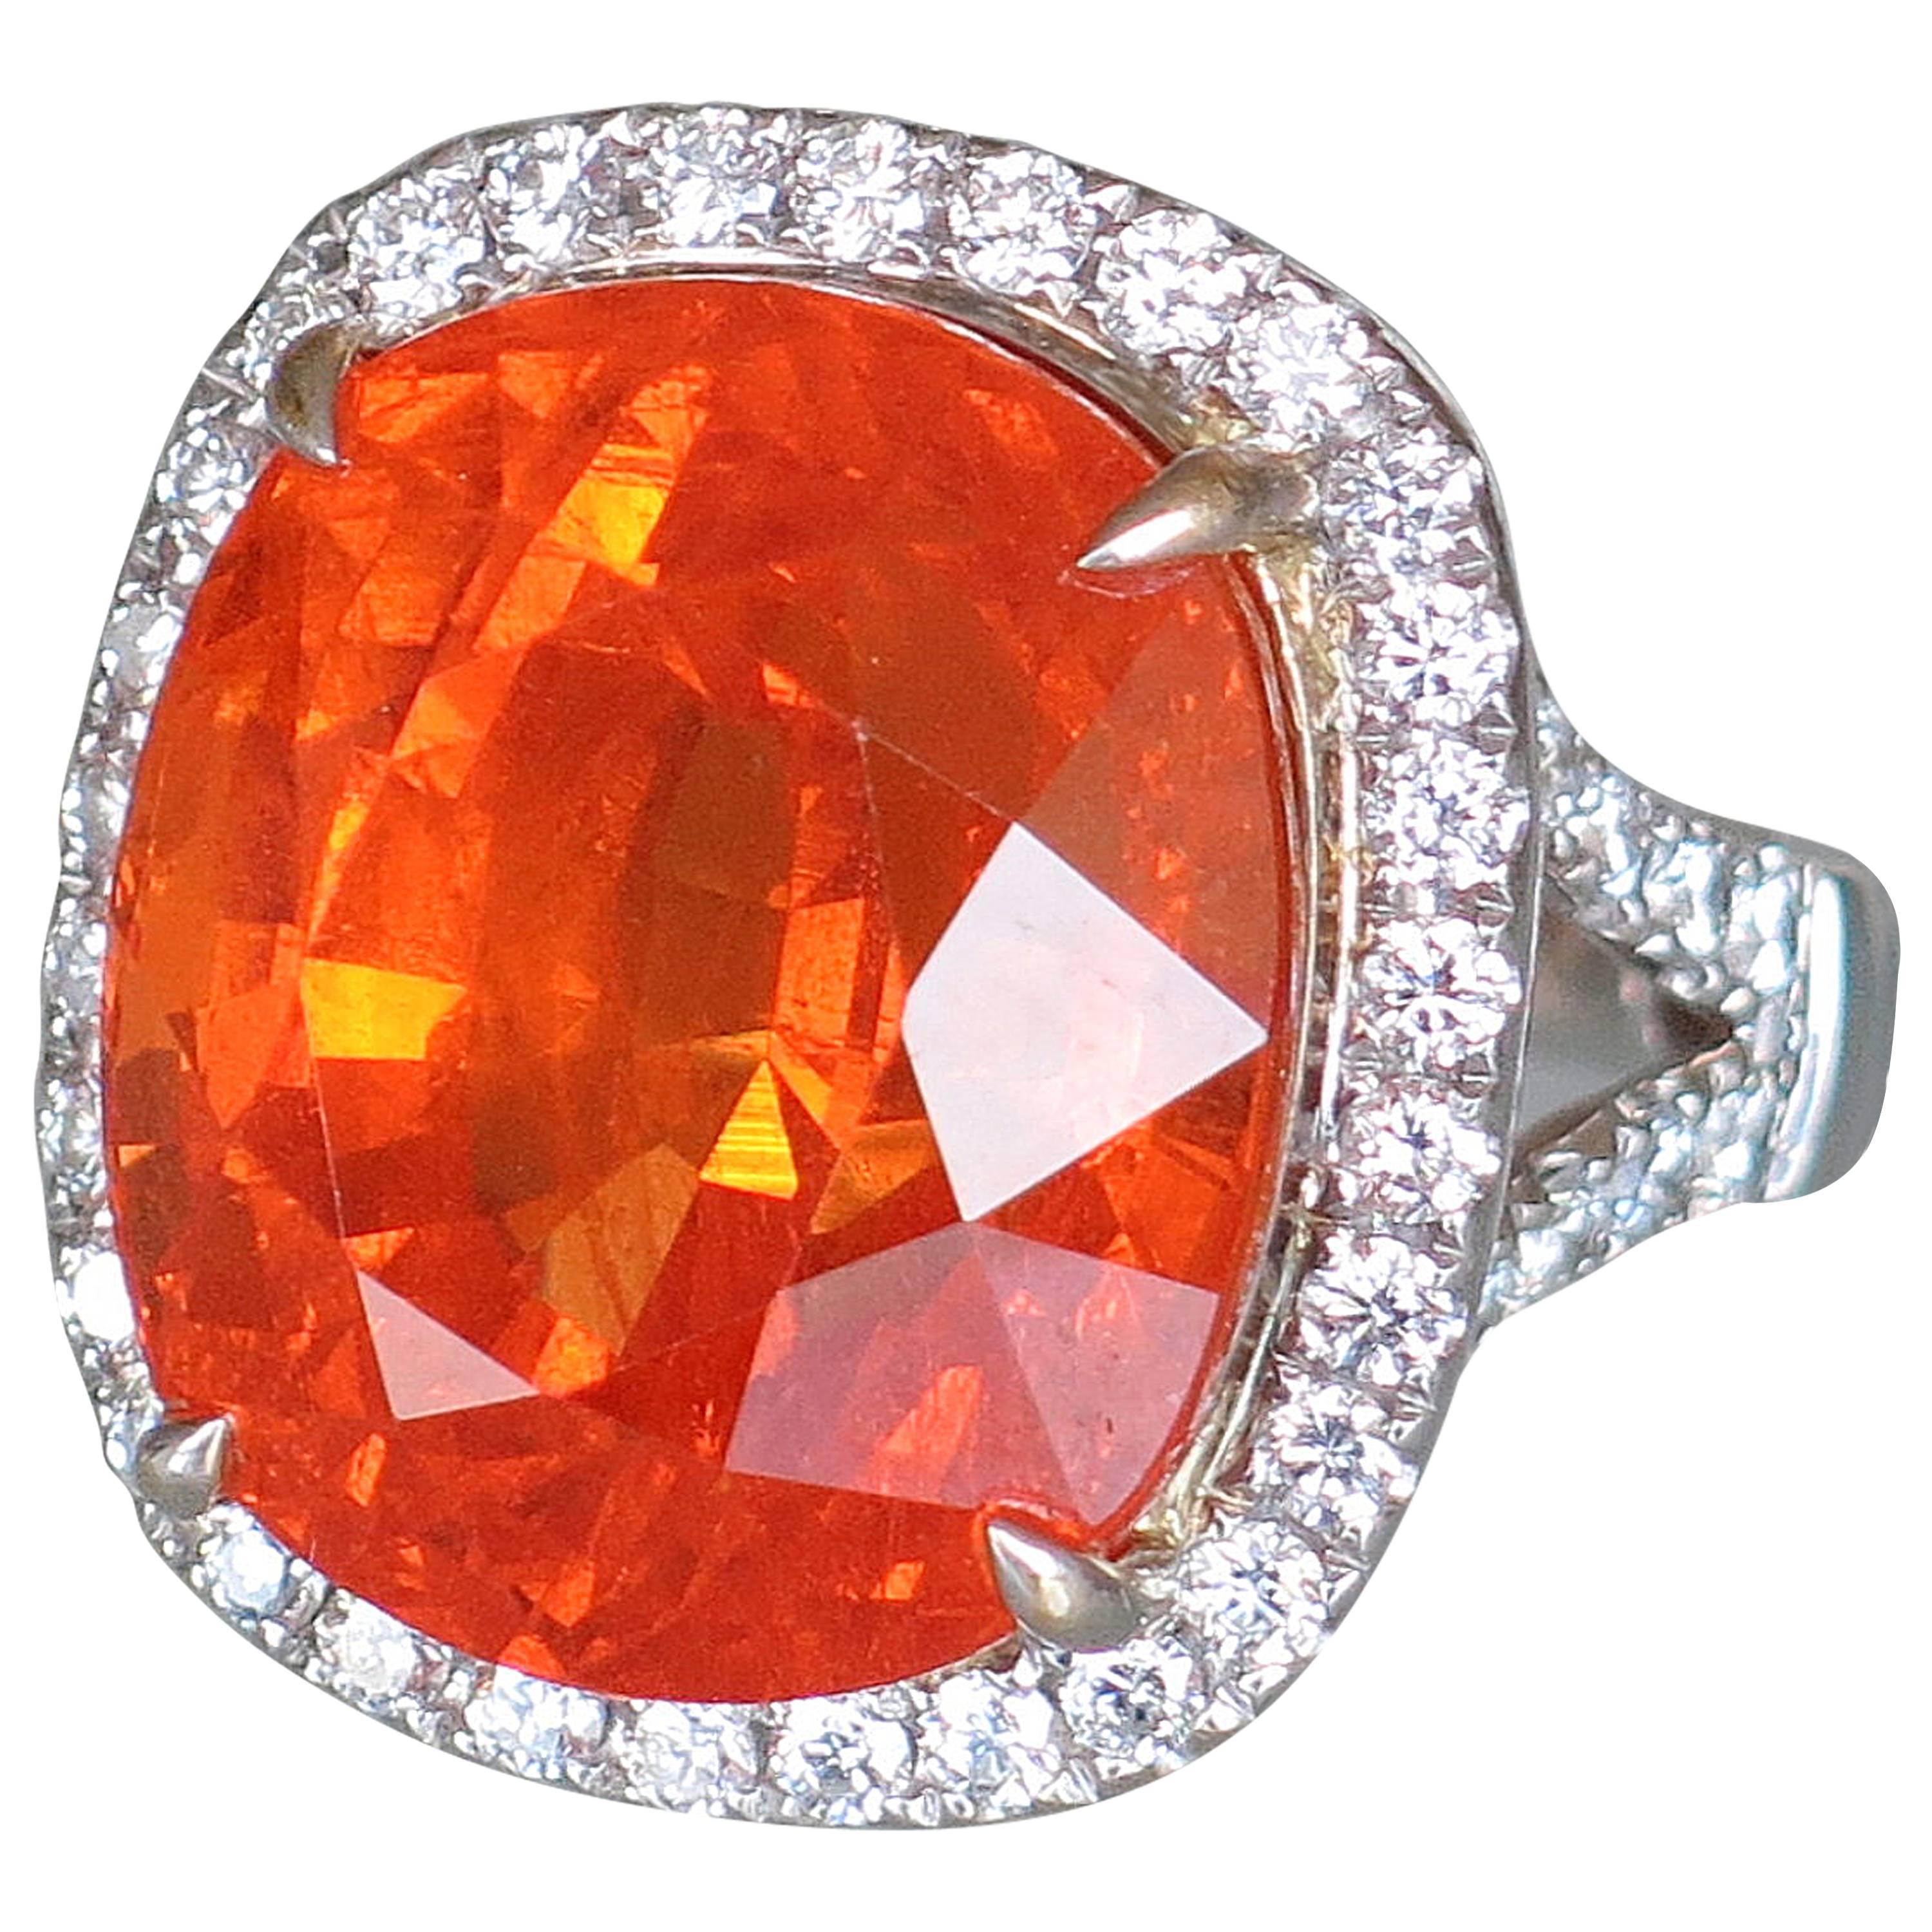 Sensationnelle bague à diamant grenat mandarin de 37,75 carats à taille coussin